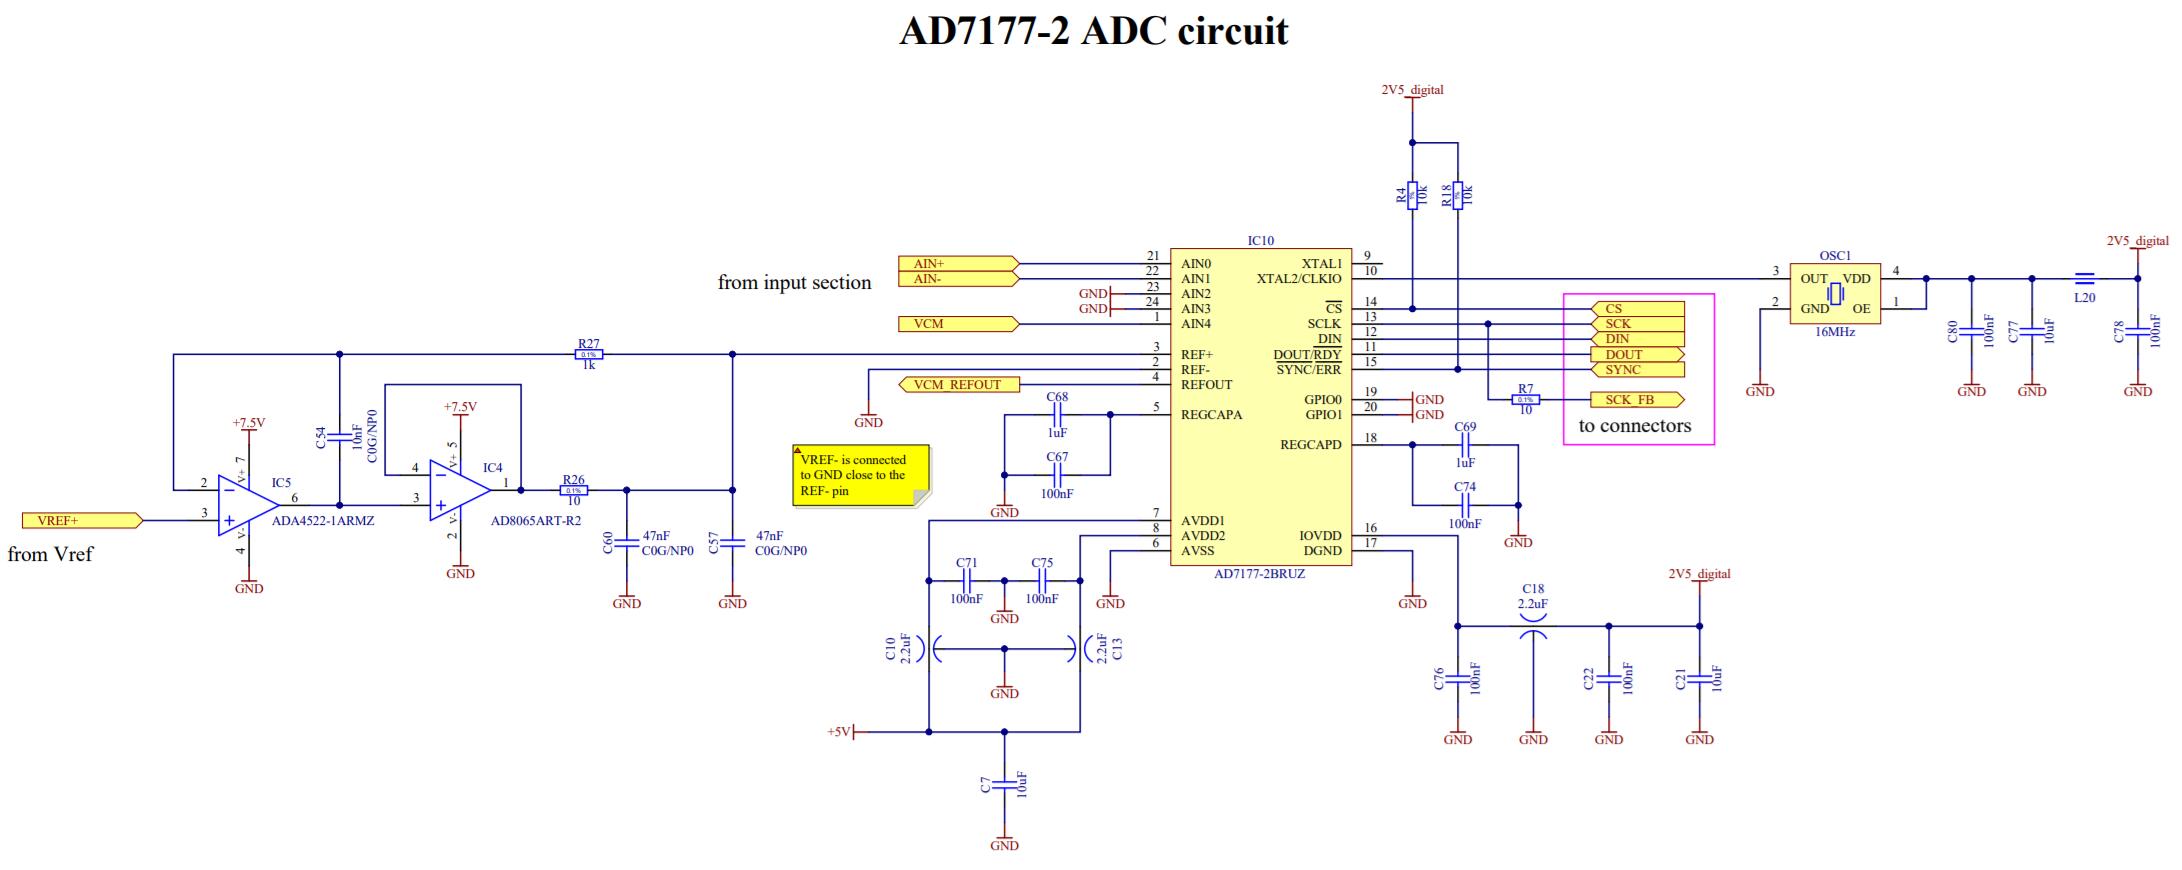 ADC Circuit diagram - Emoe Metrology